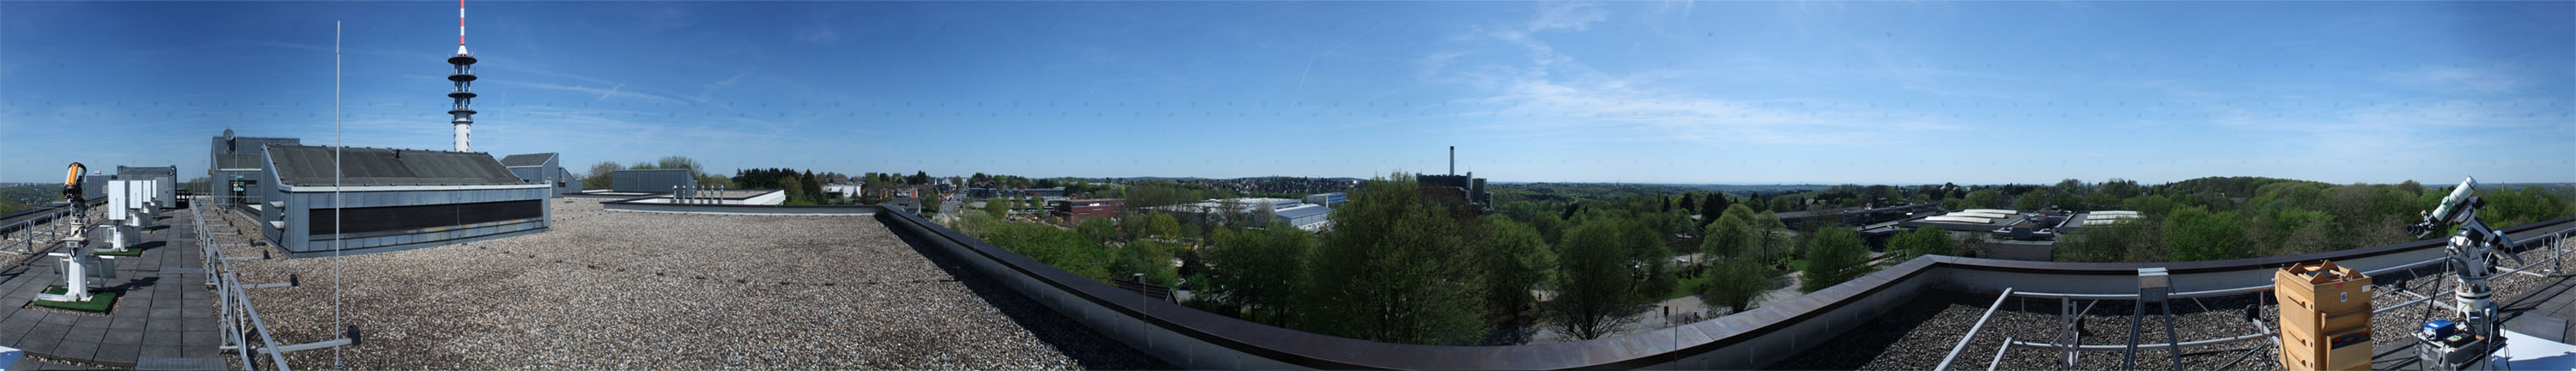 360°-Panorama der Sternwarte, Standort neben Insel 1